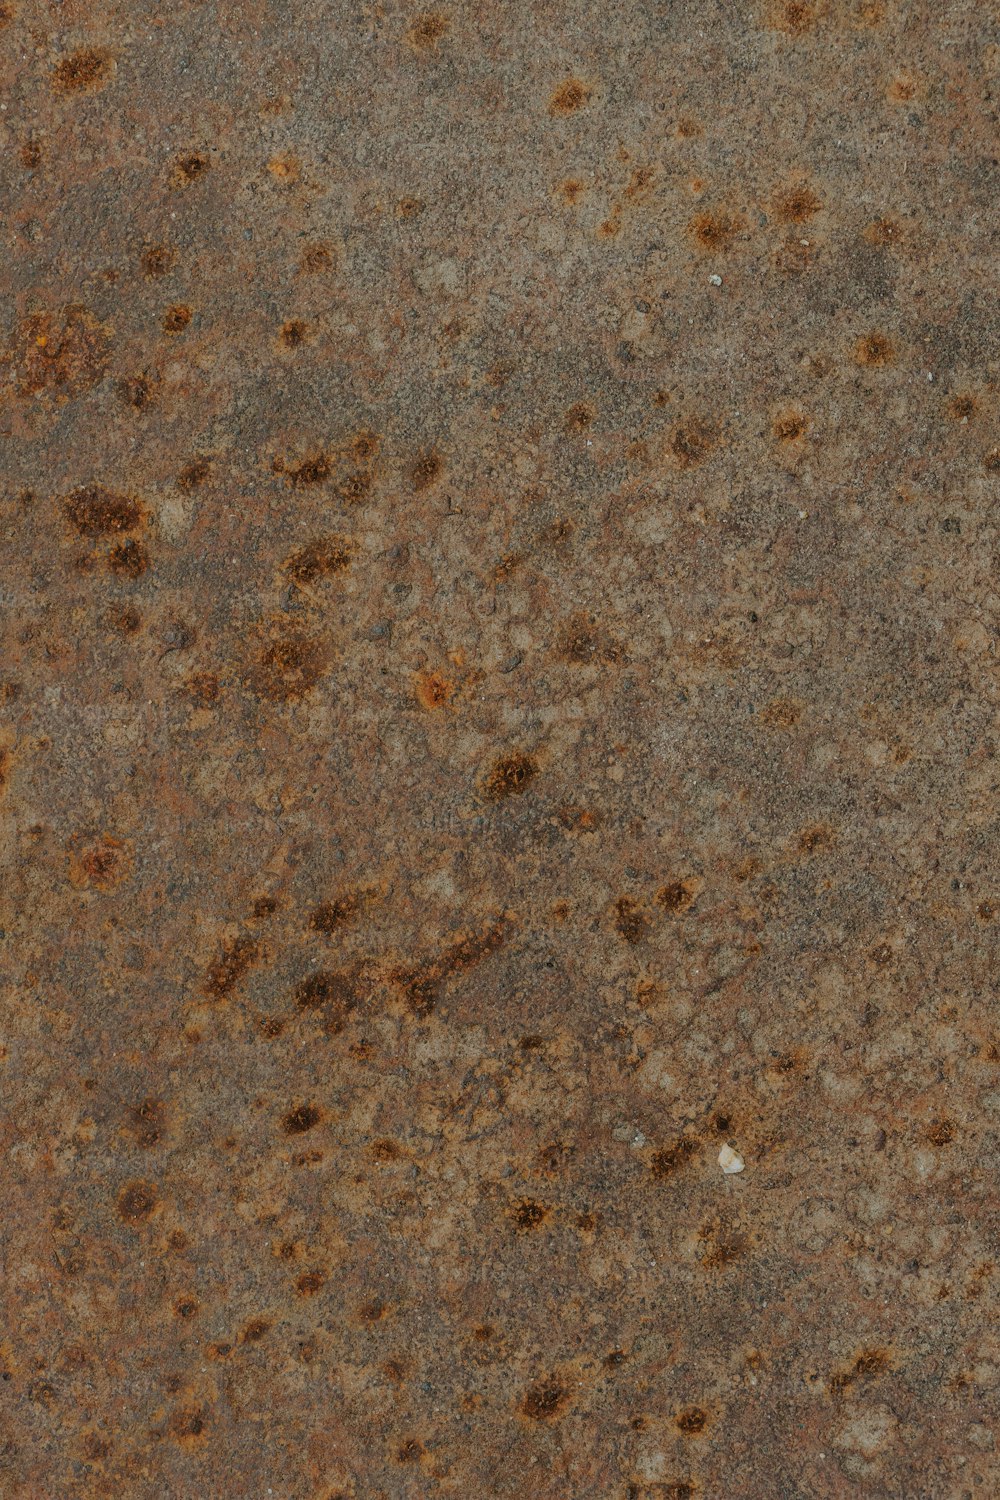 un primer plano de una superficie metálica con manchas marrones